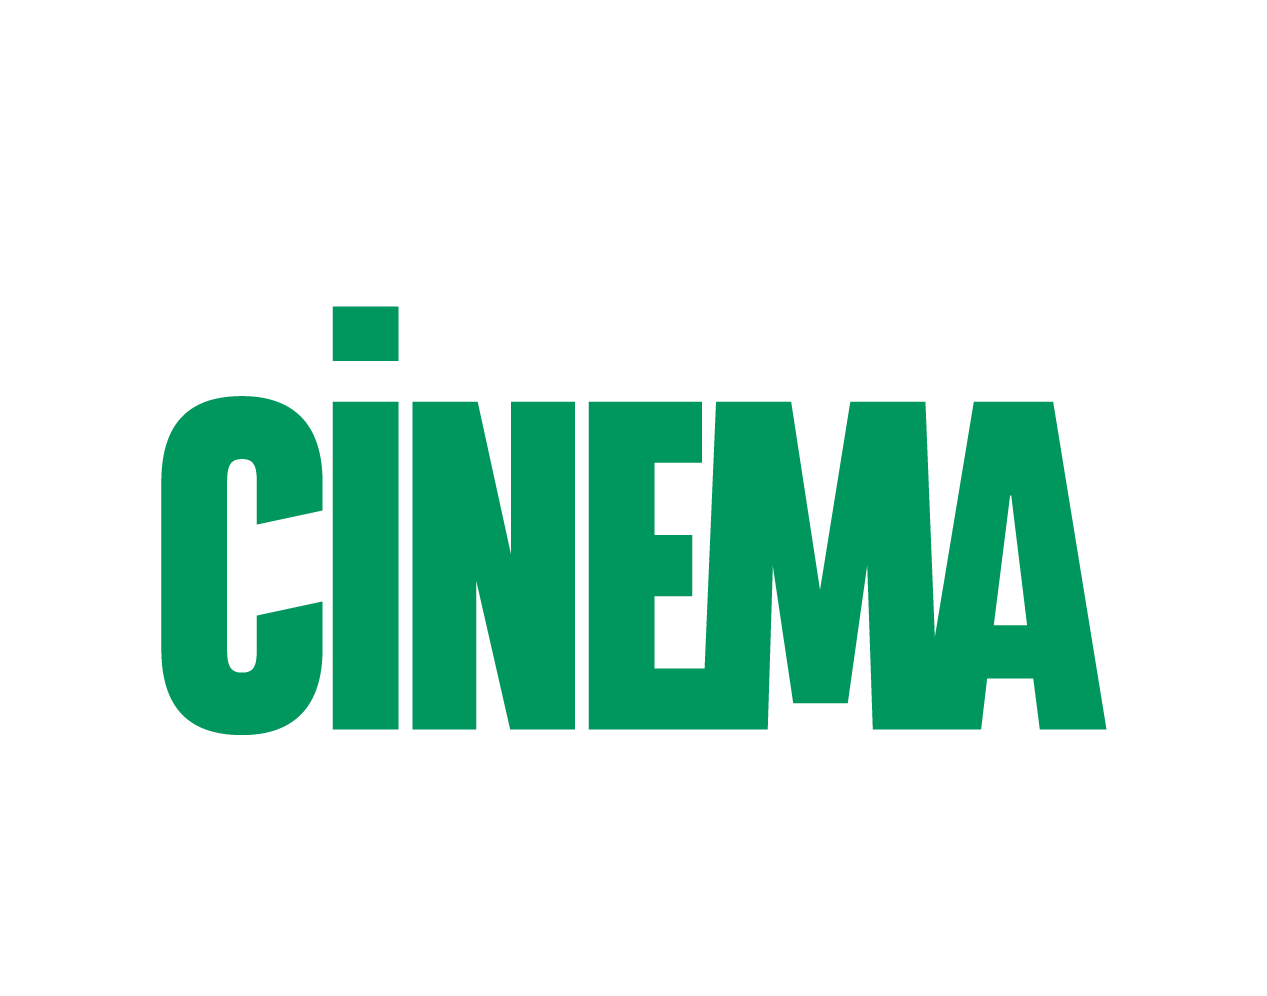 We Love Cinema by BNP Paribas